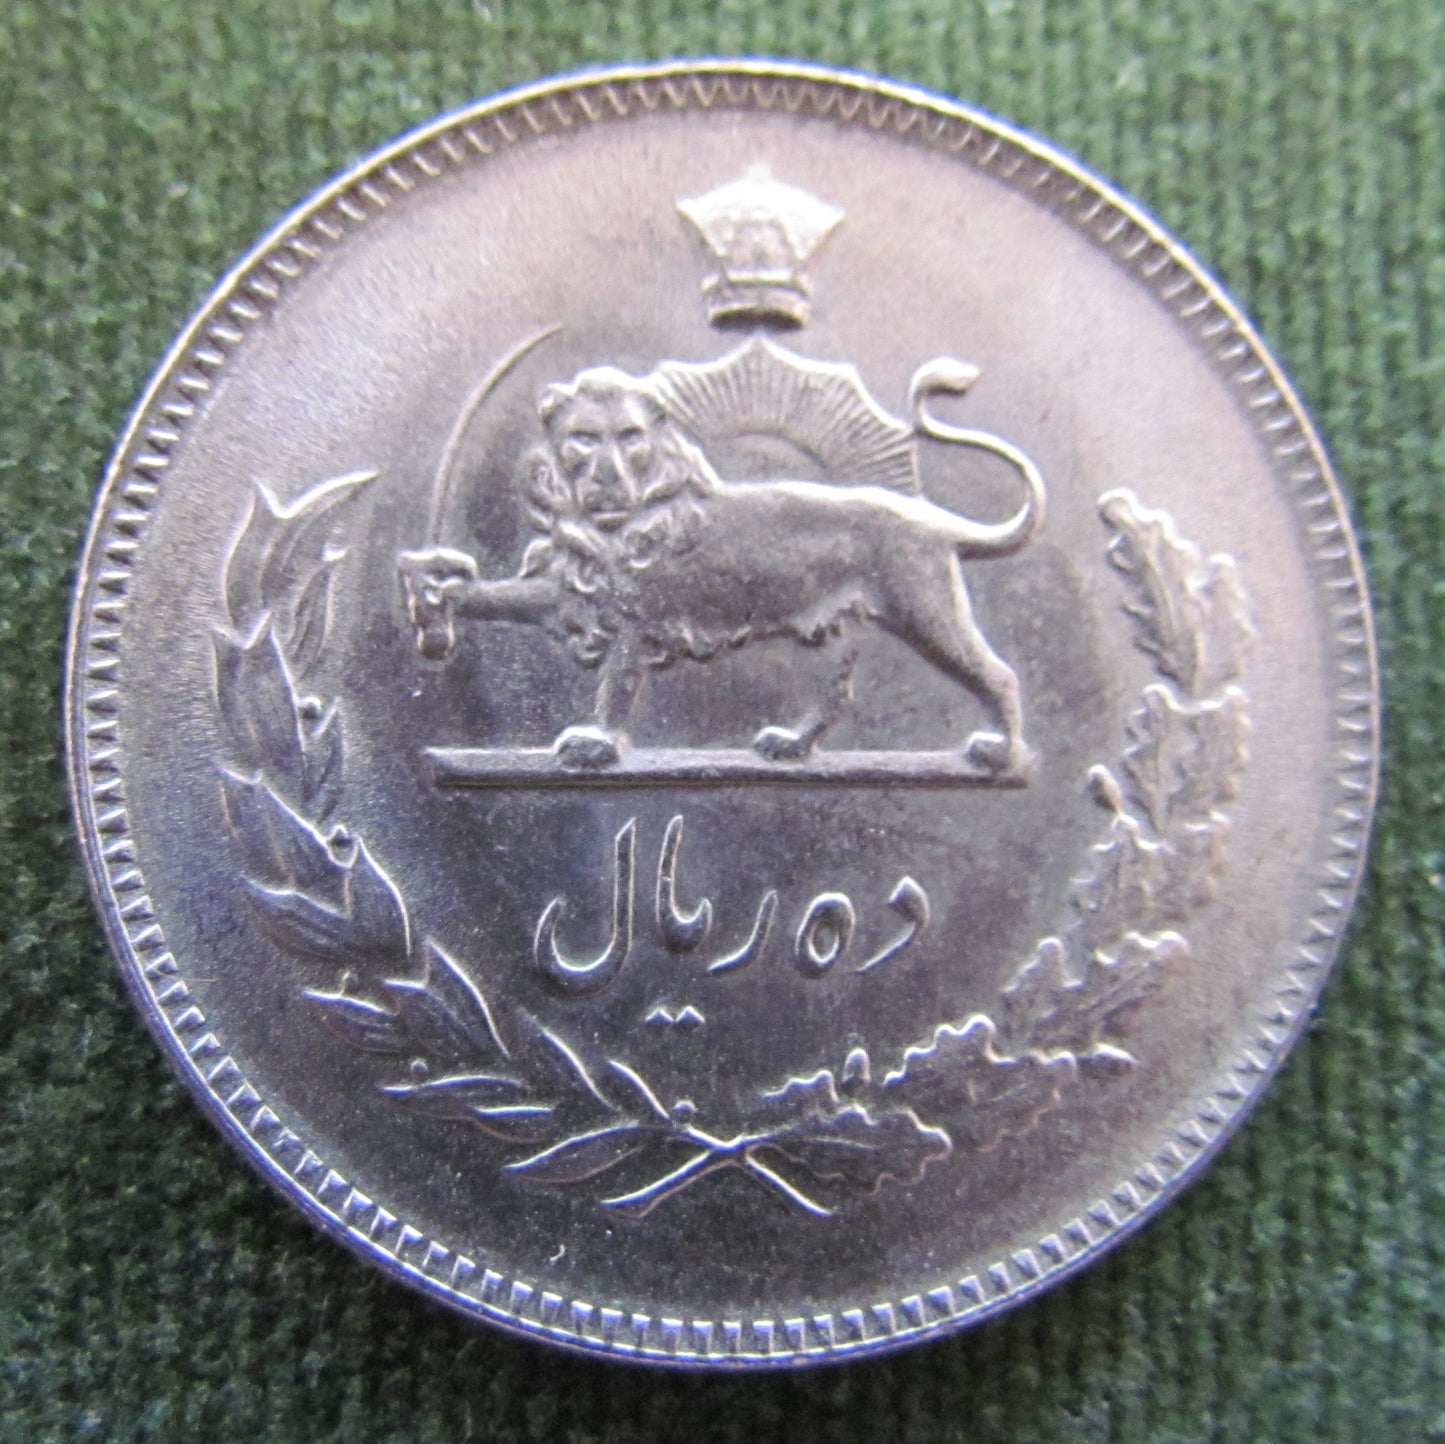 Iran 1972 10 Rials Sha Mohammad Reza Pahlavi Coin AH 1349 - Circulated